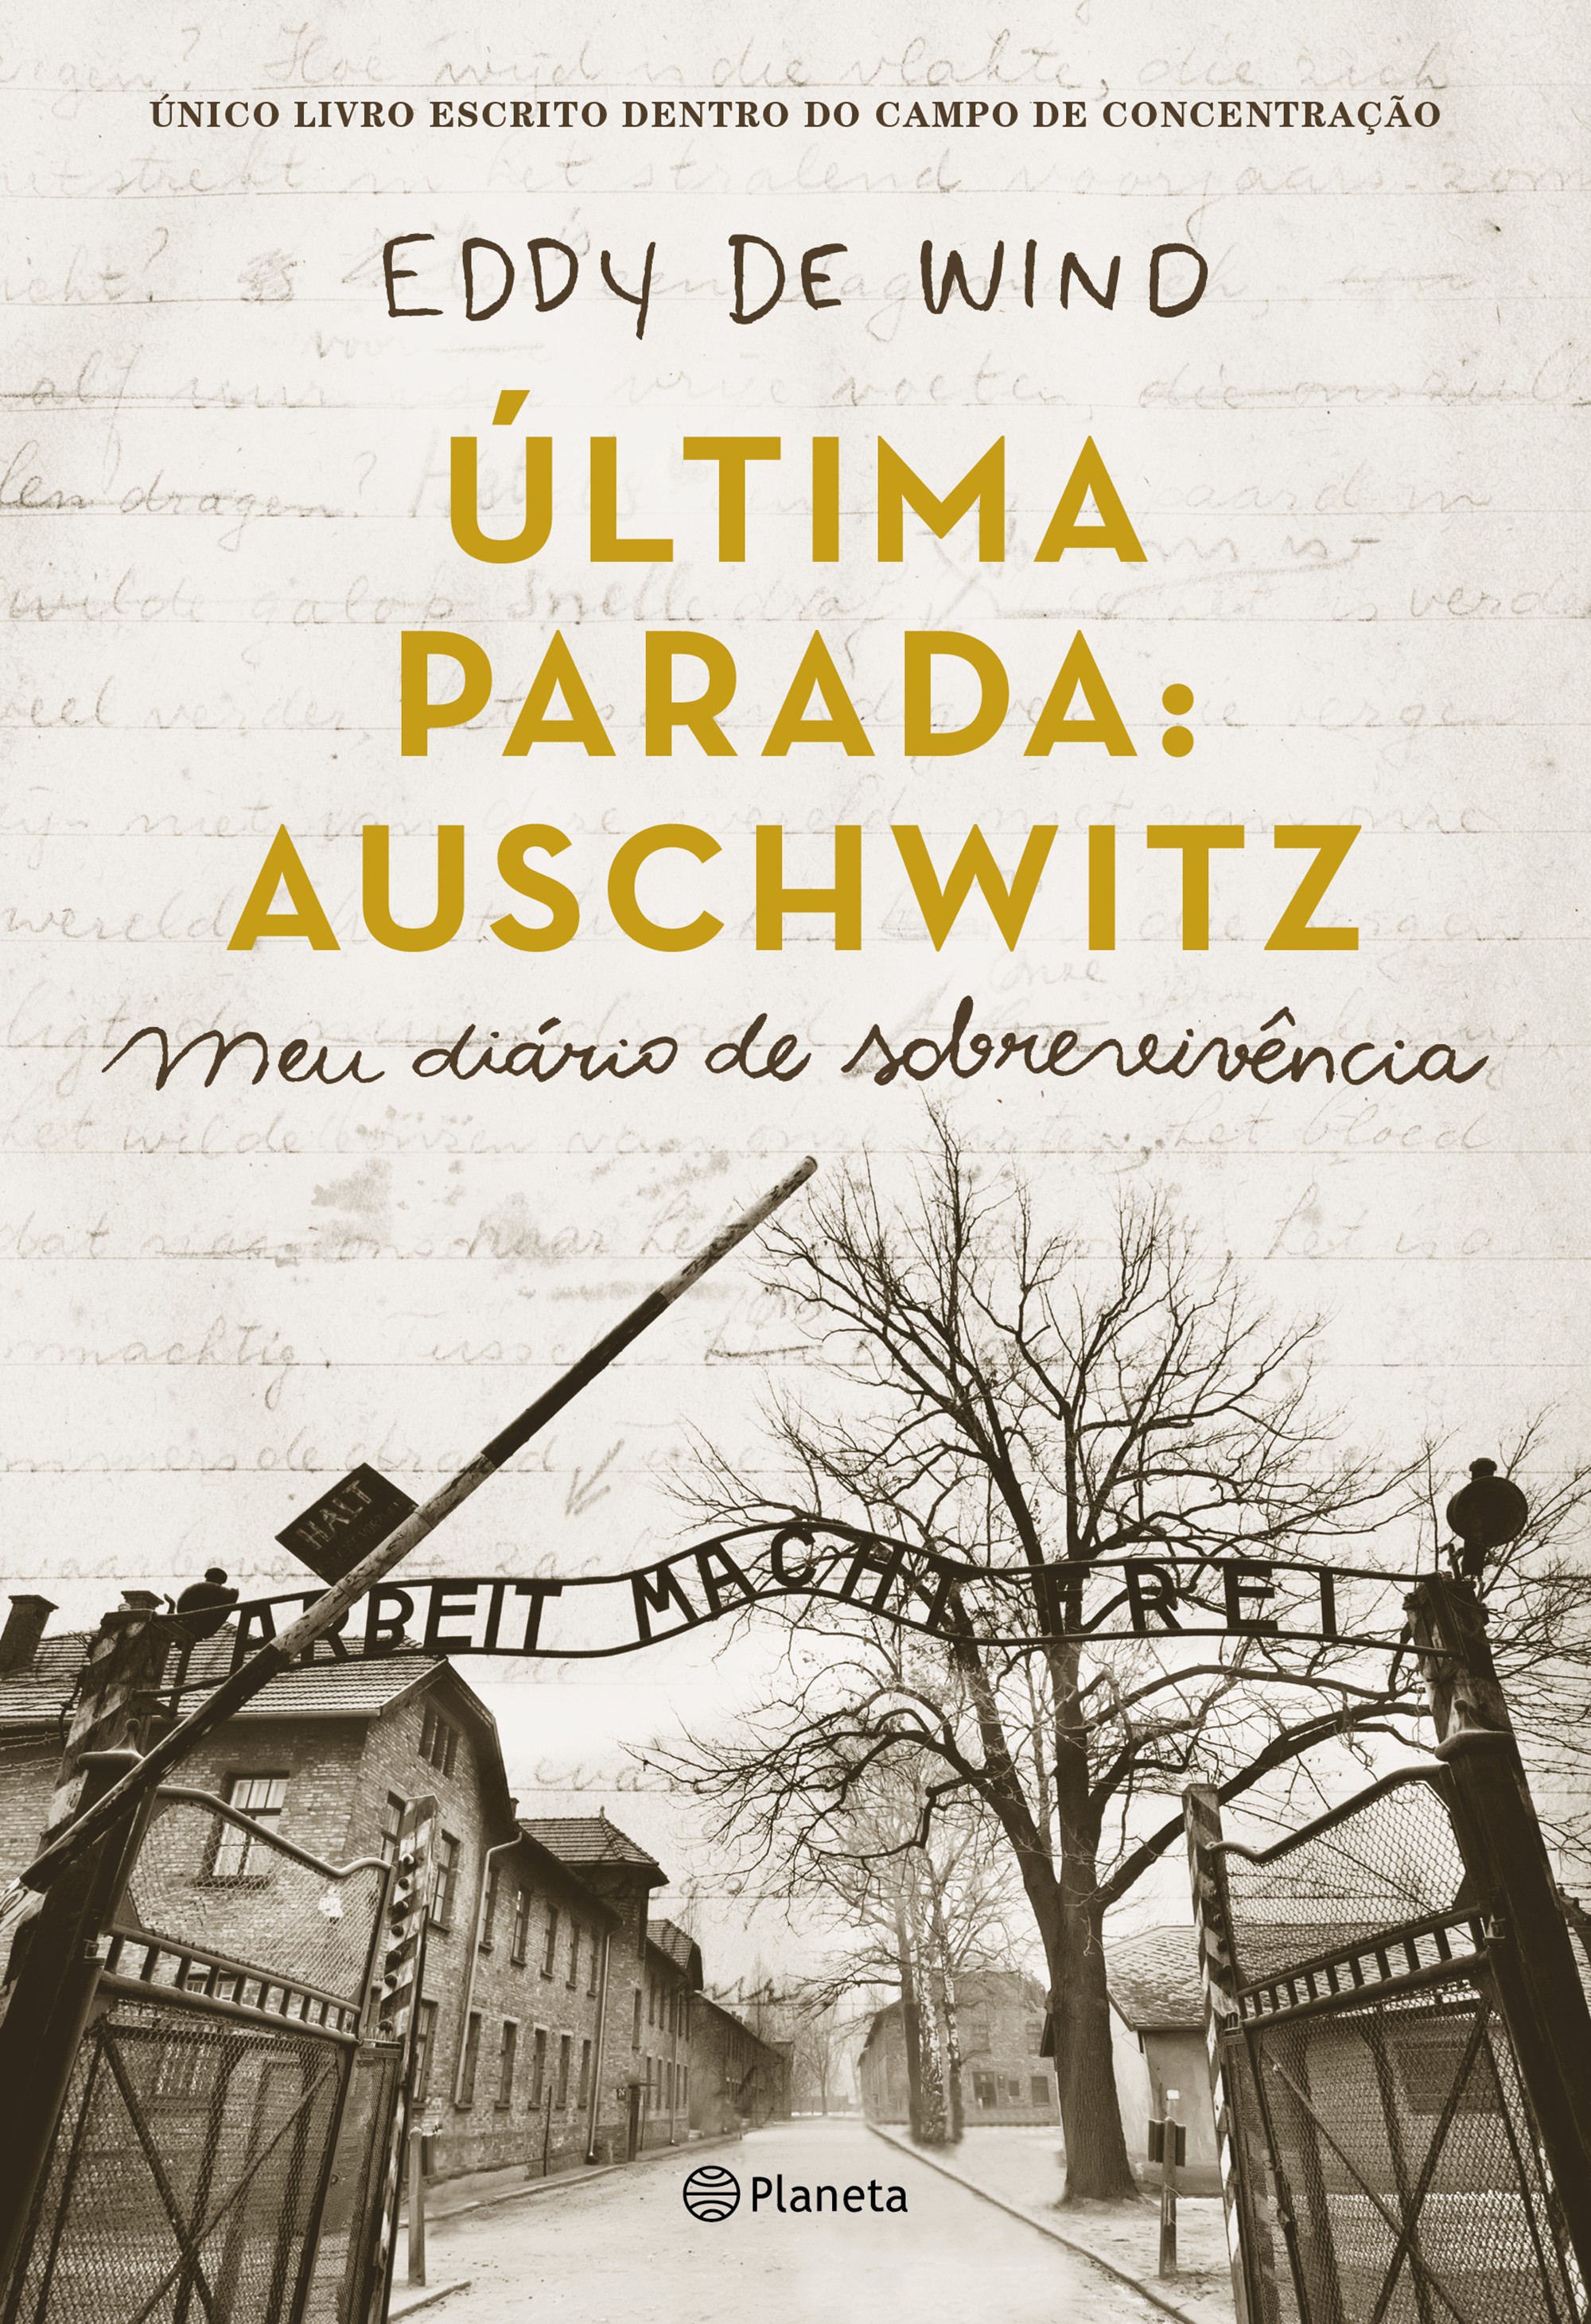 Última parada: Auschwitz